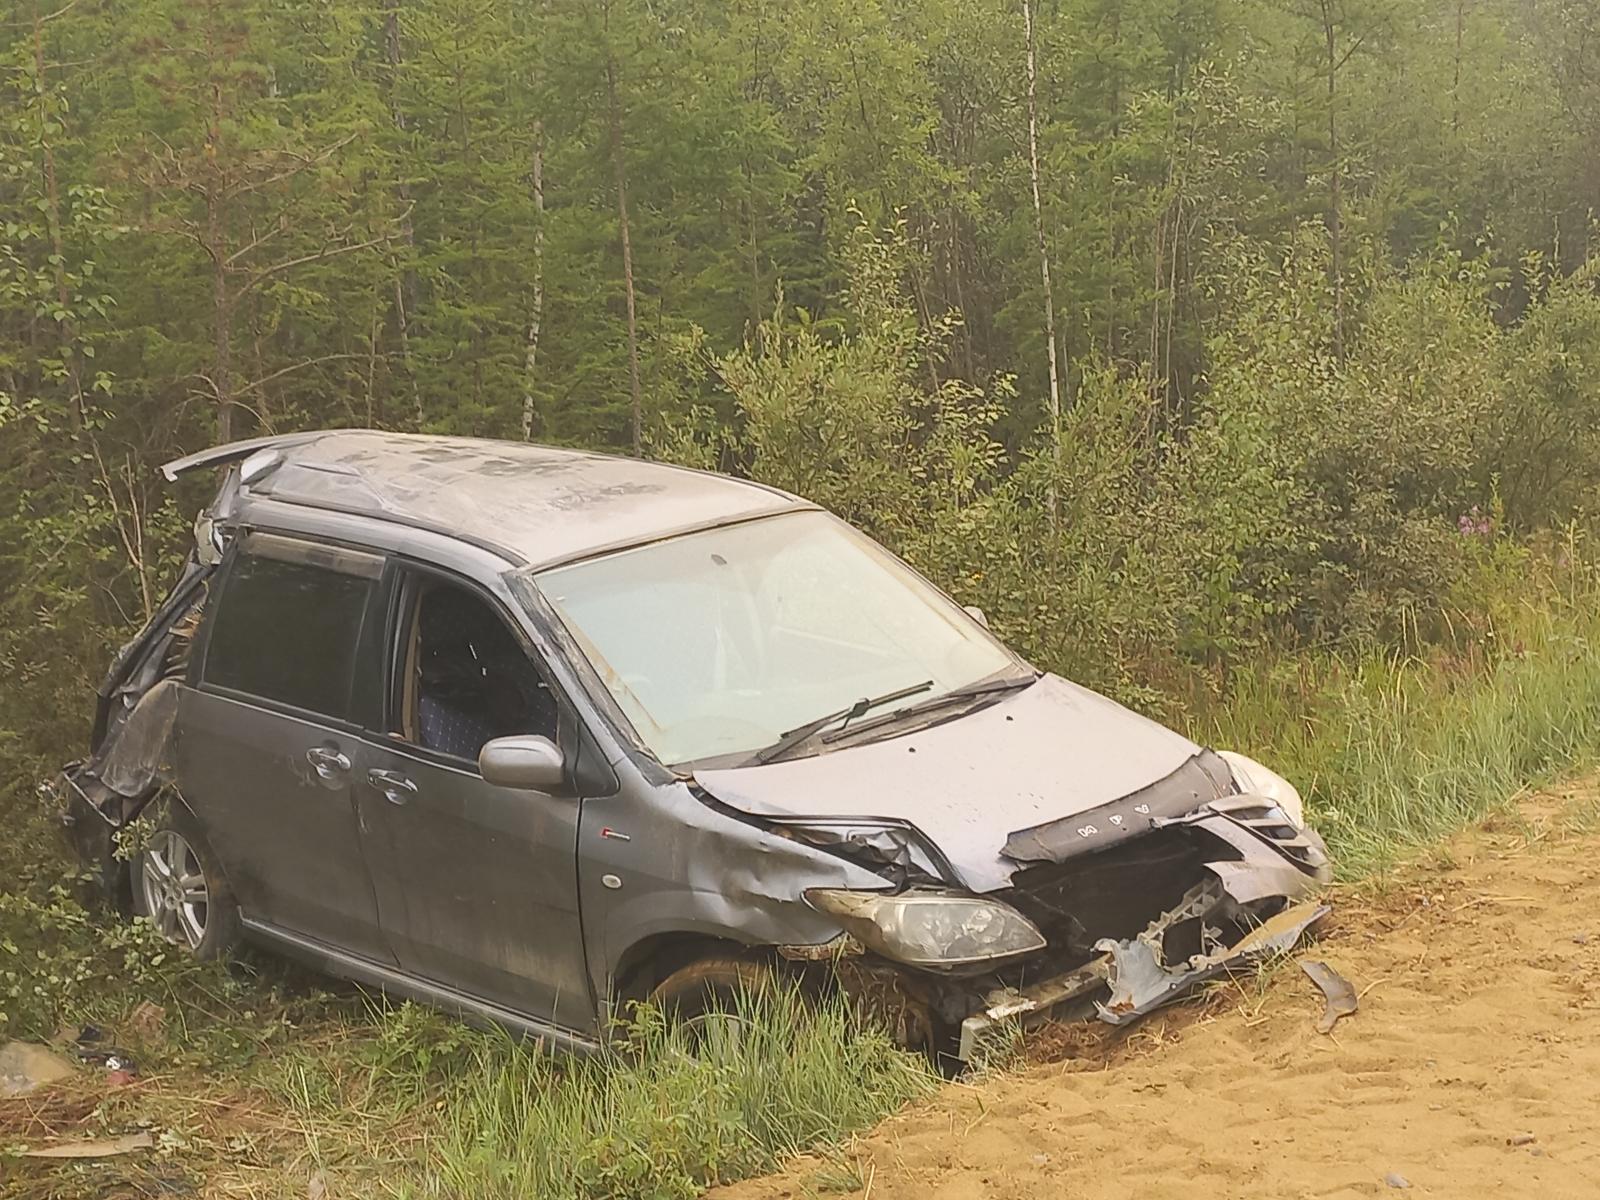 Водитель погиб при опрокидывании машины в Сунтарском районе Якутии